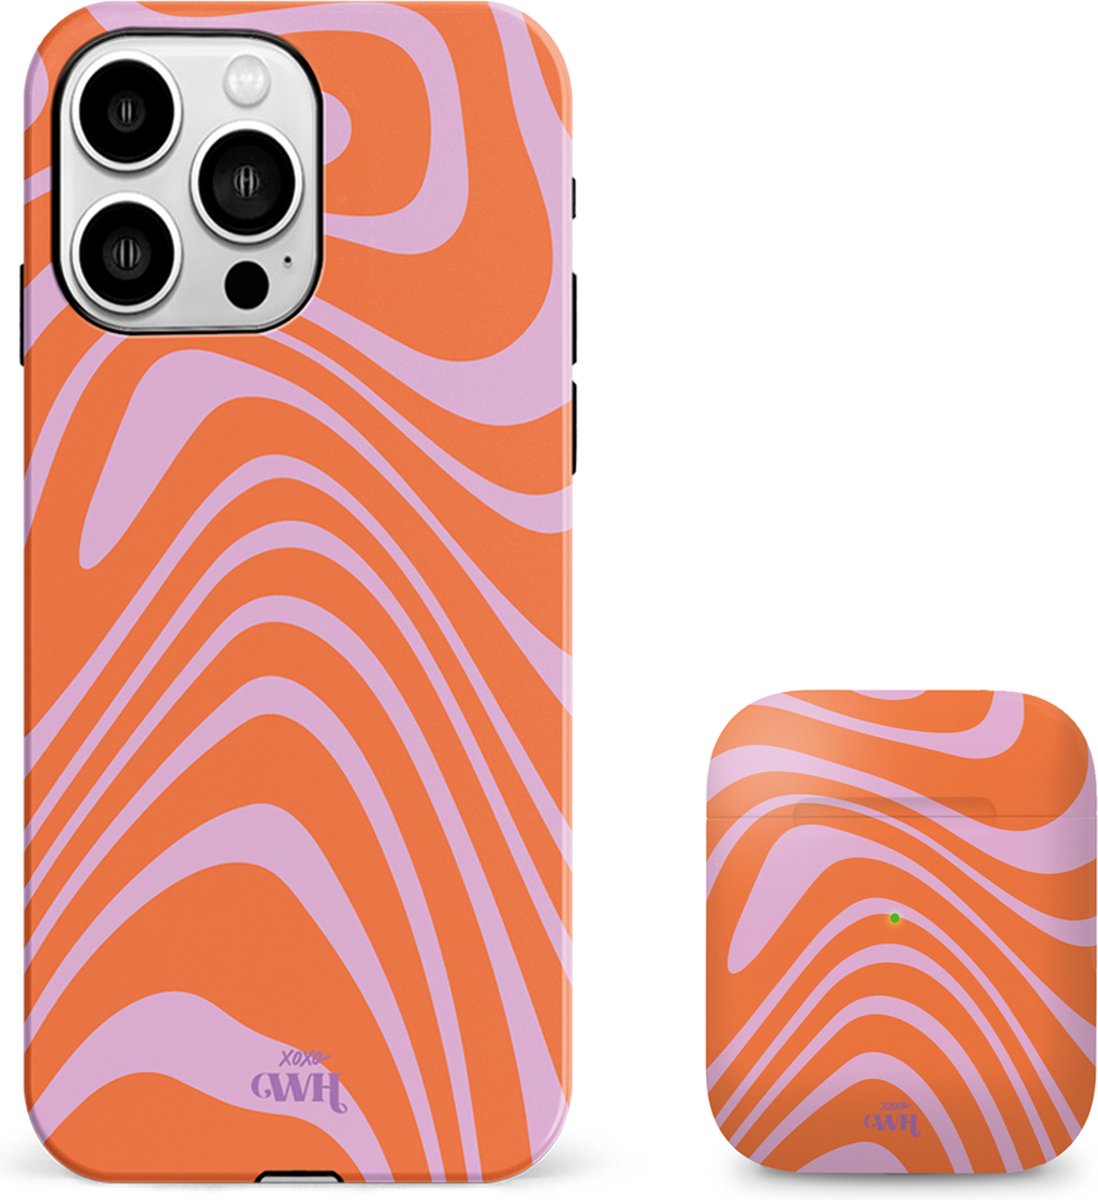 xoxo Wildhearts siliconen hoesje + AirPods 1/2 hoesje - Geschikt voor iPhone 14 Pro Max en AirPods 1 en 2 - Boogie Wonderland Orange - Double Layer telefoonhoesje - Oranje - Roze - Hoesje met print